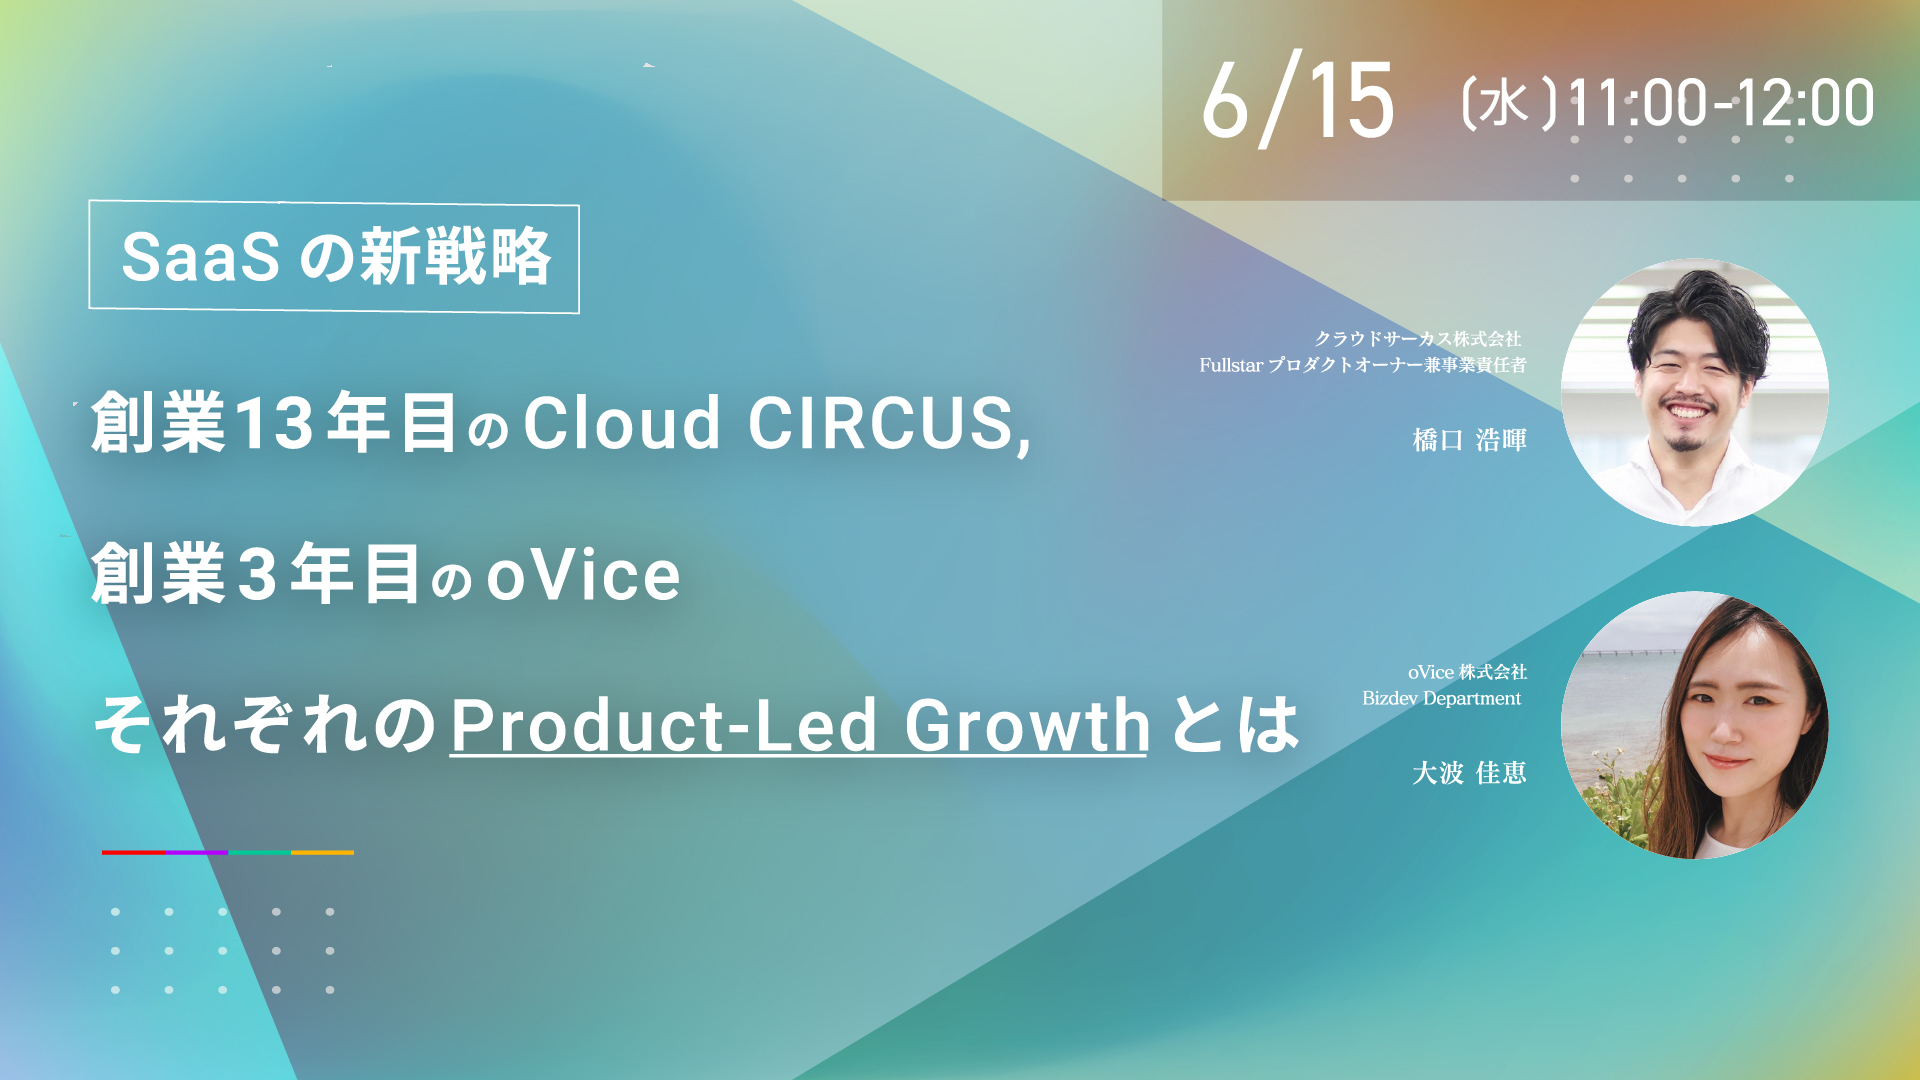 【6月15日(水)】SaaSの新戦略！Cloud CIRCUS、oVice。それぞれのProduct-Led Growthとは